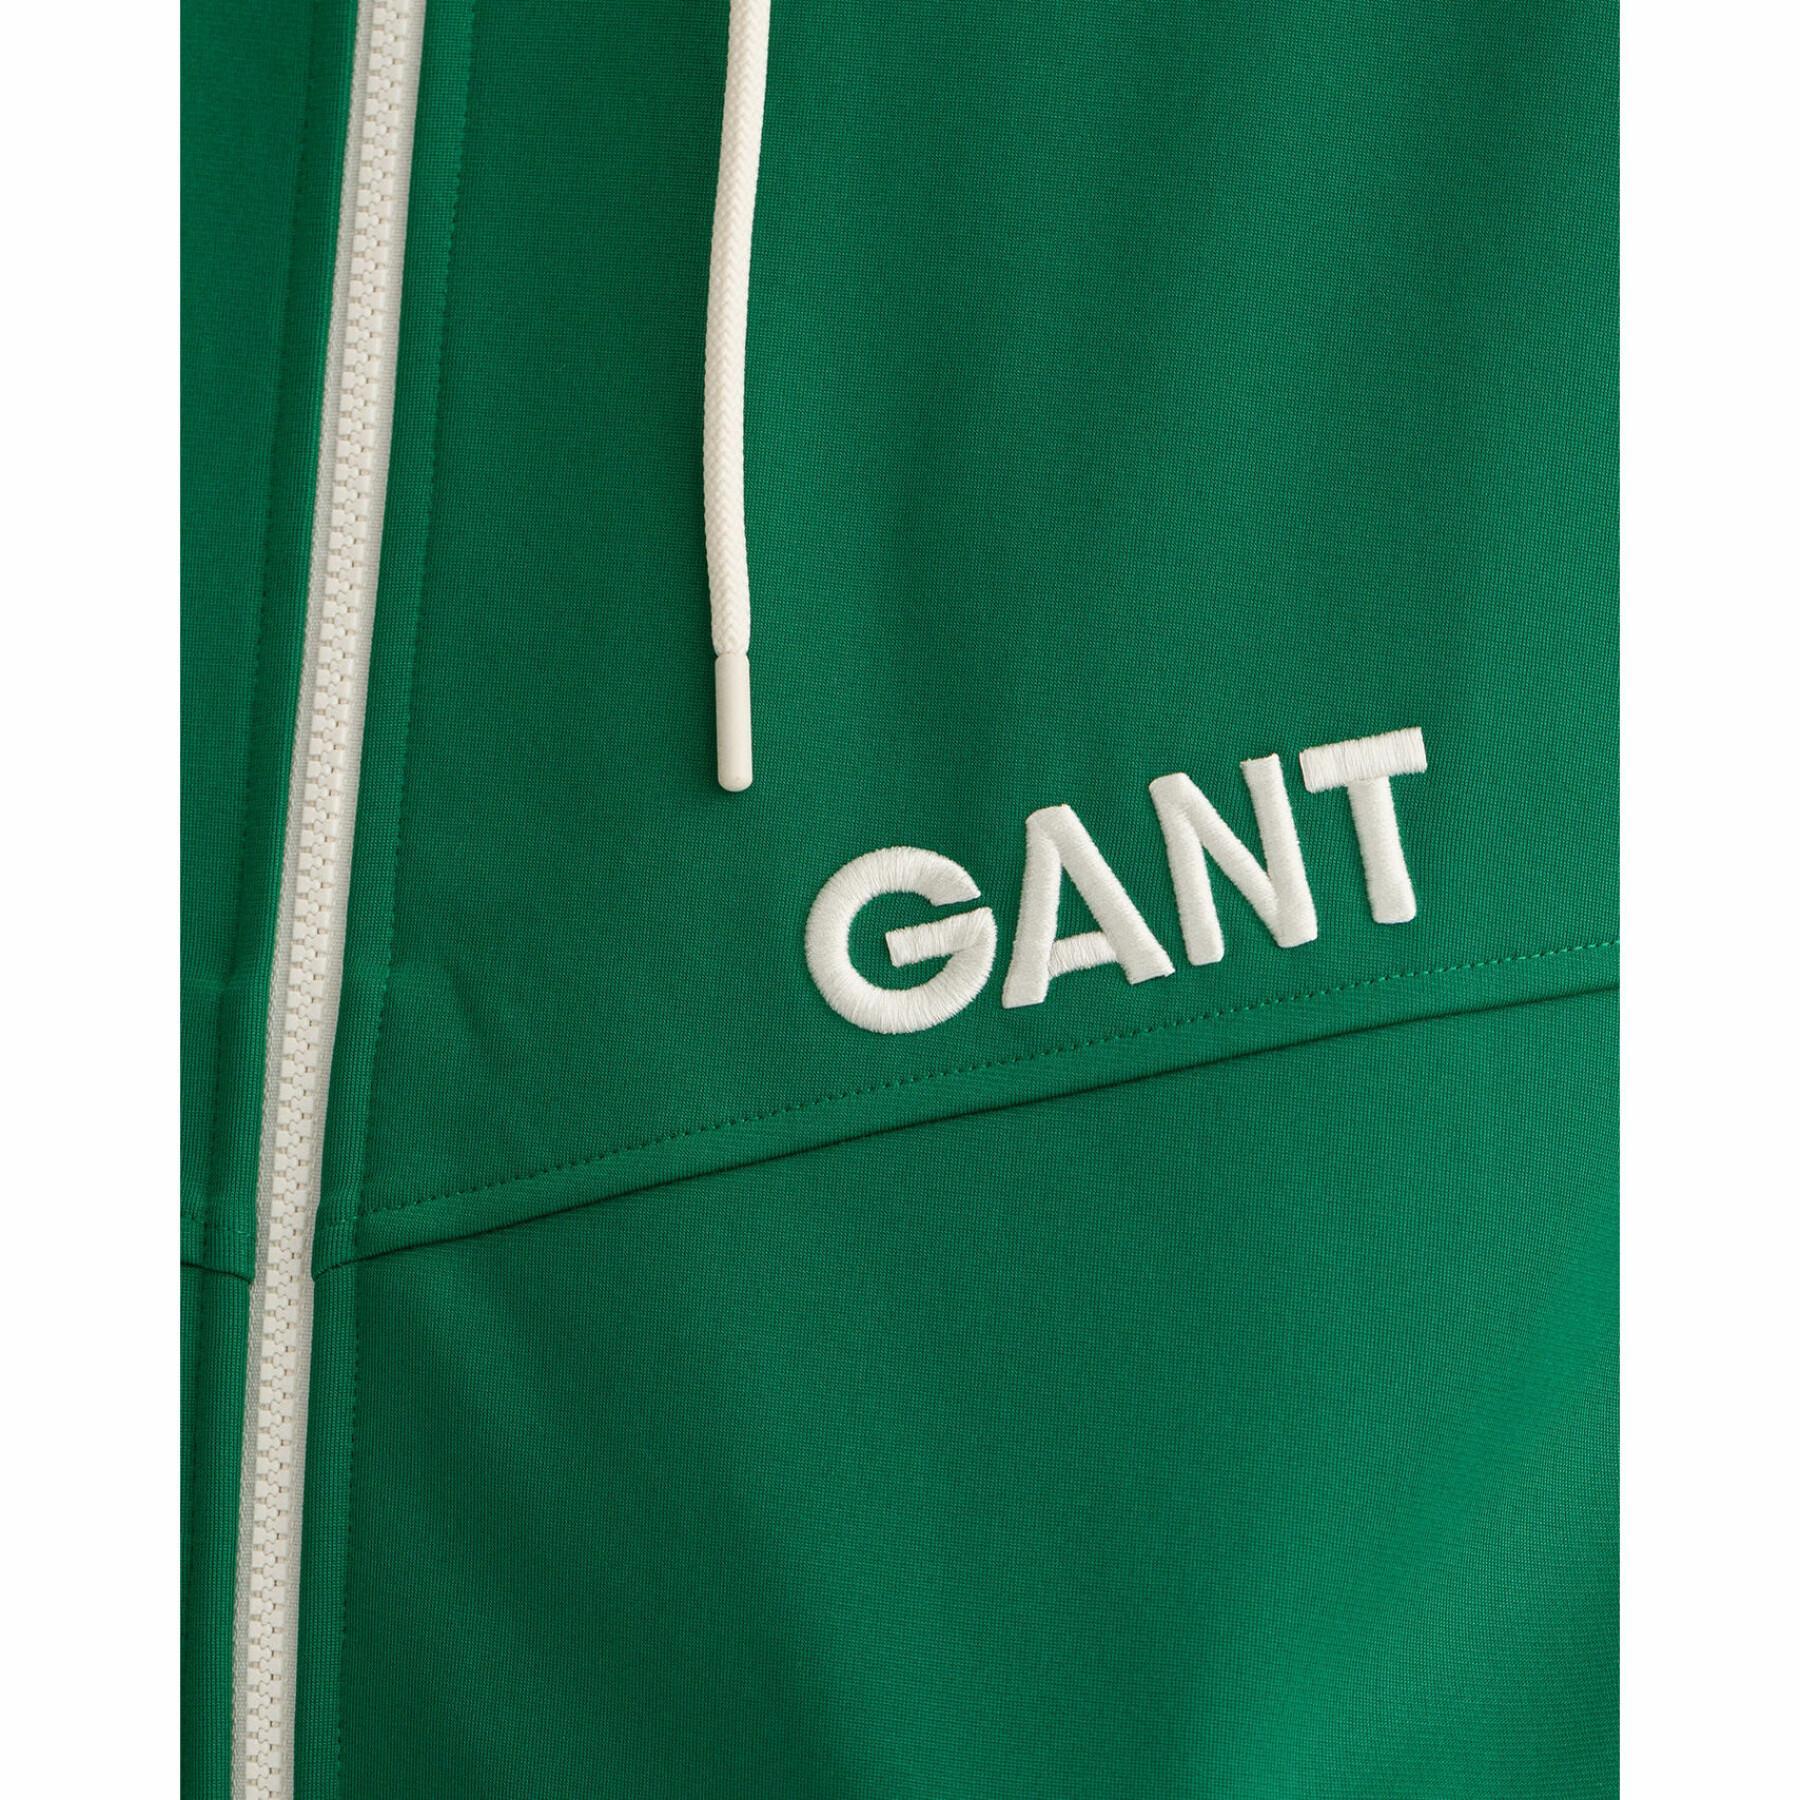 Camisola com capuz Gant Racquet Club